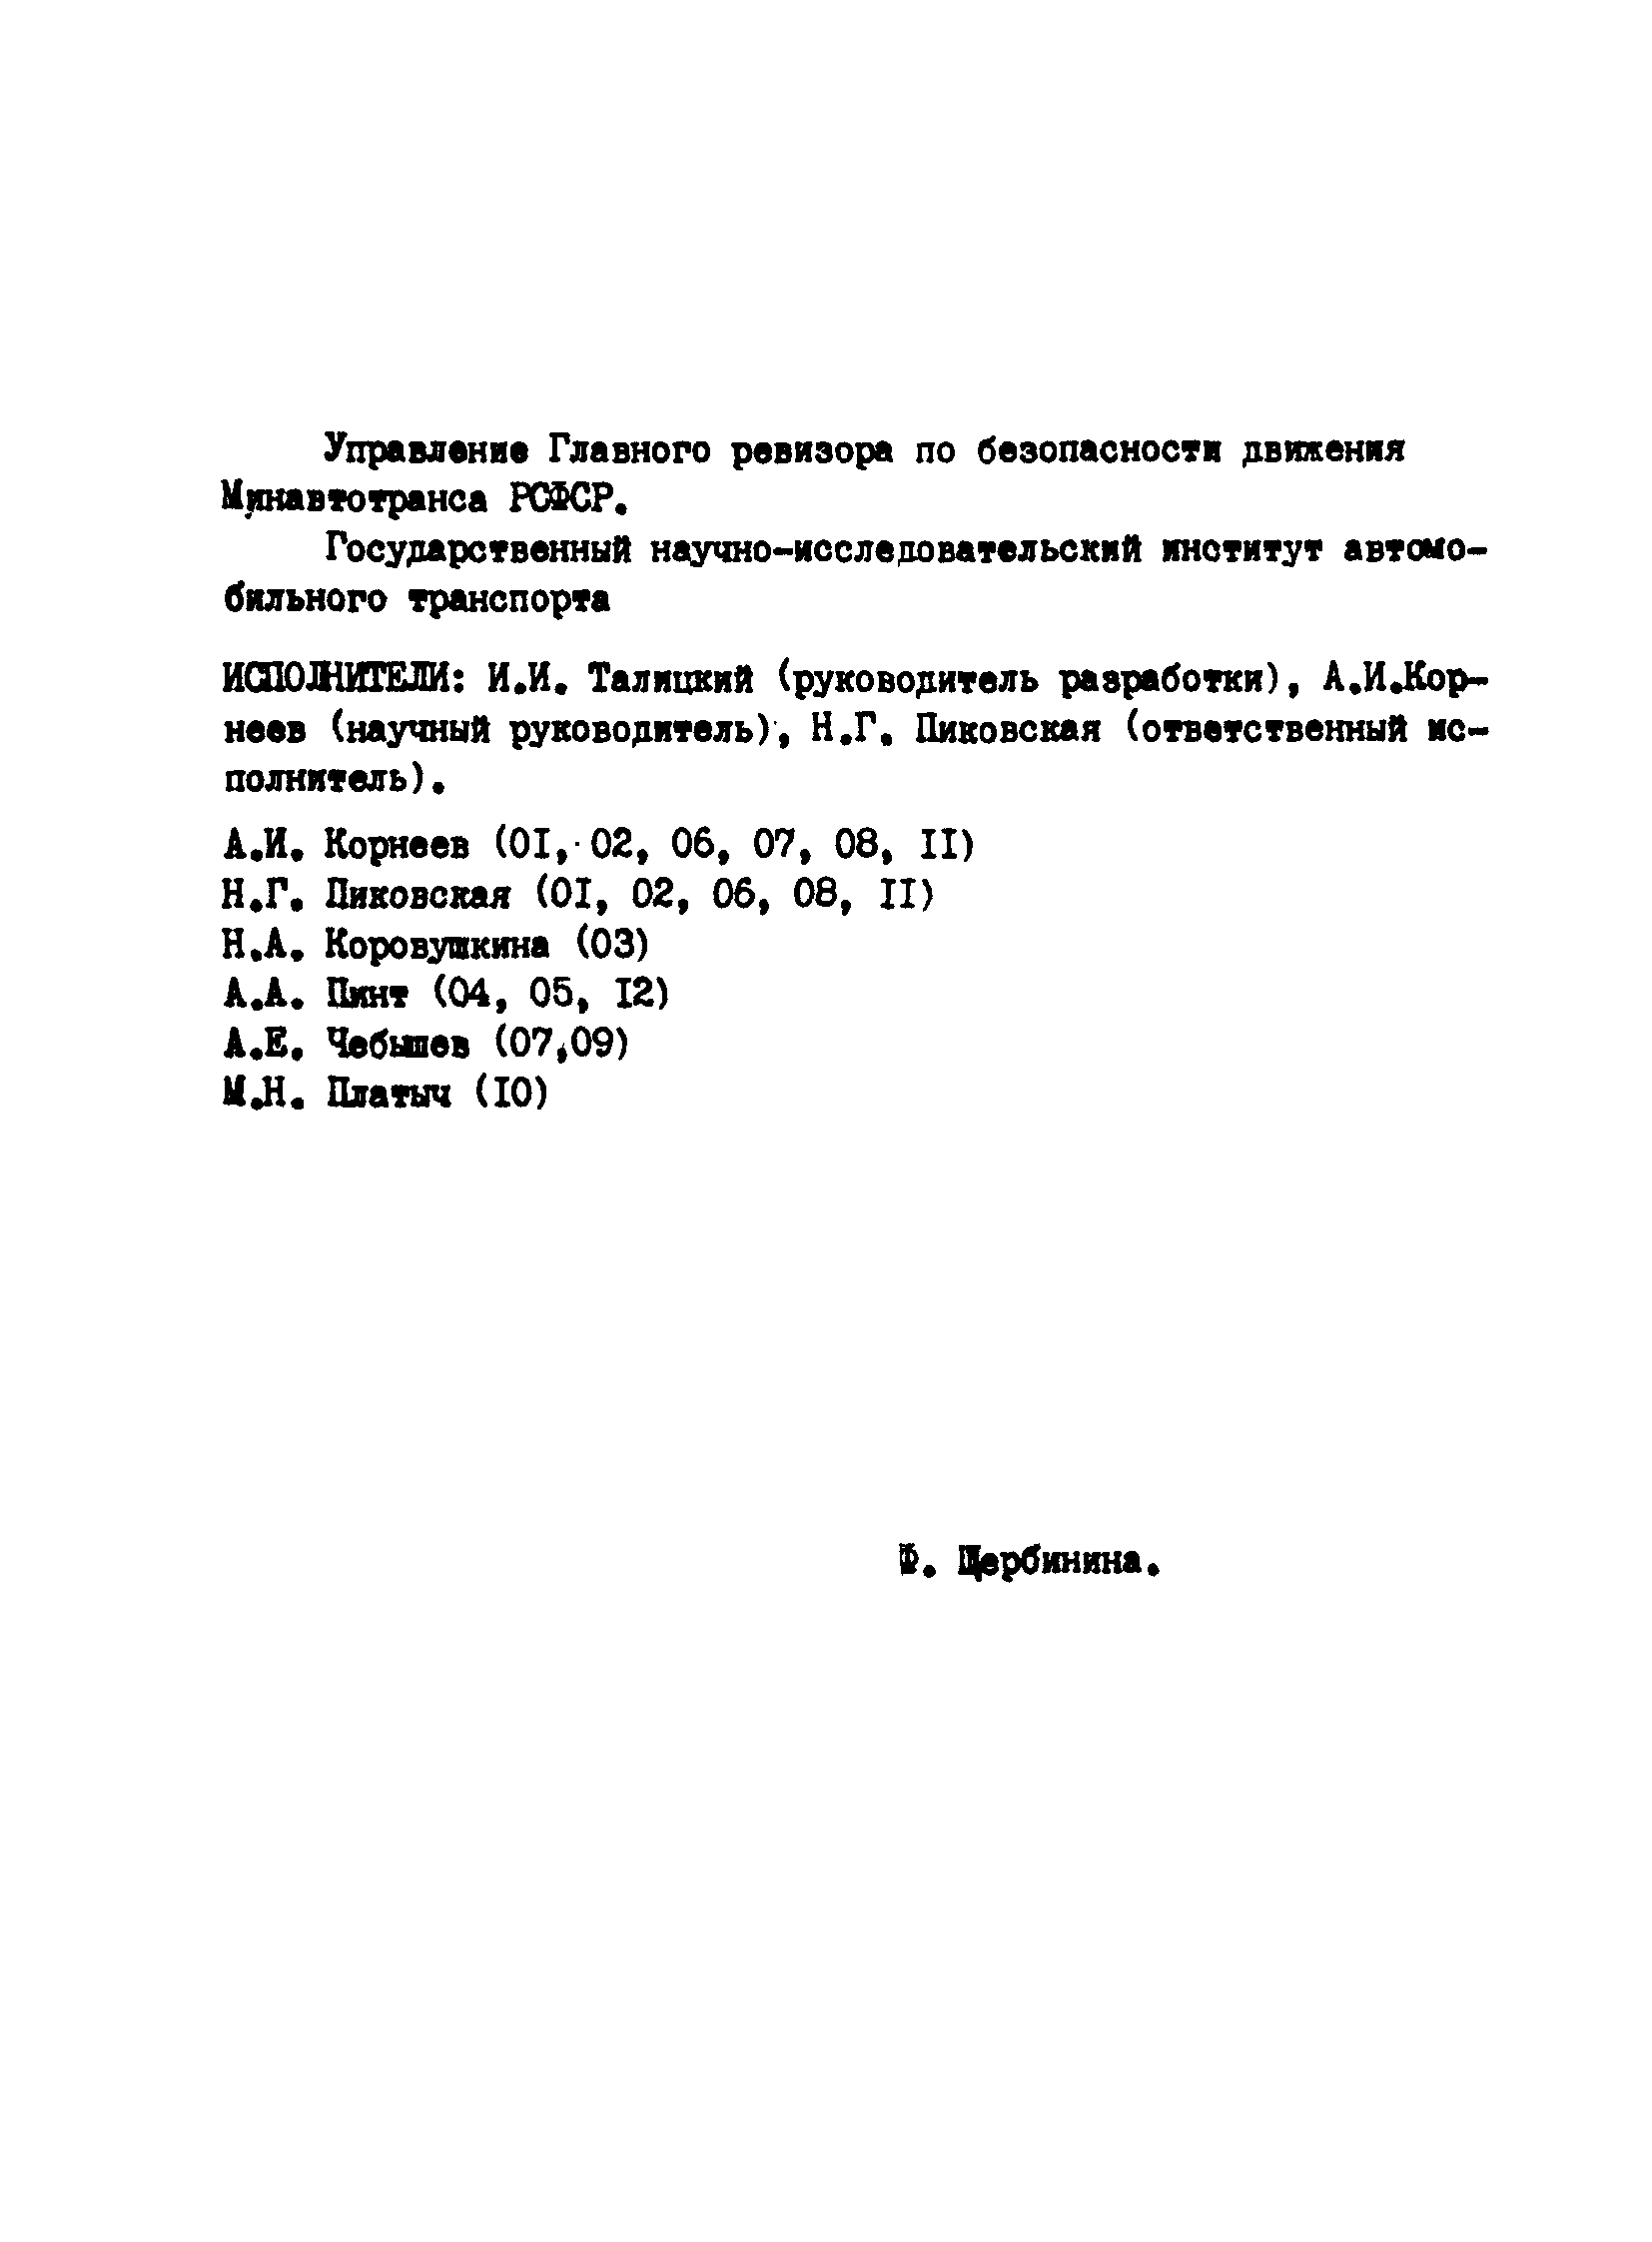 РД 200-РСФСР-12-0071-86-01